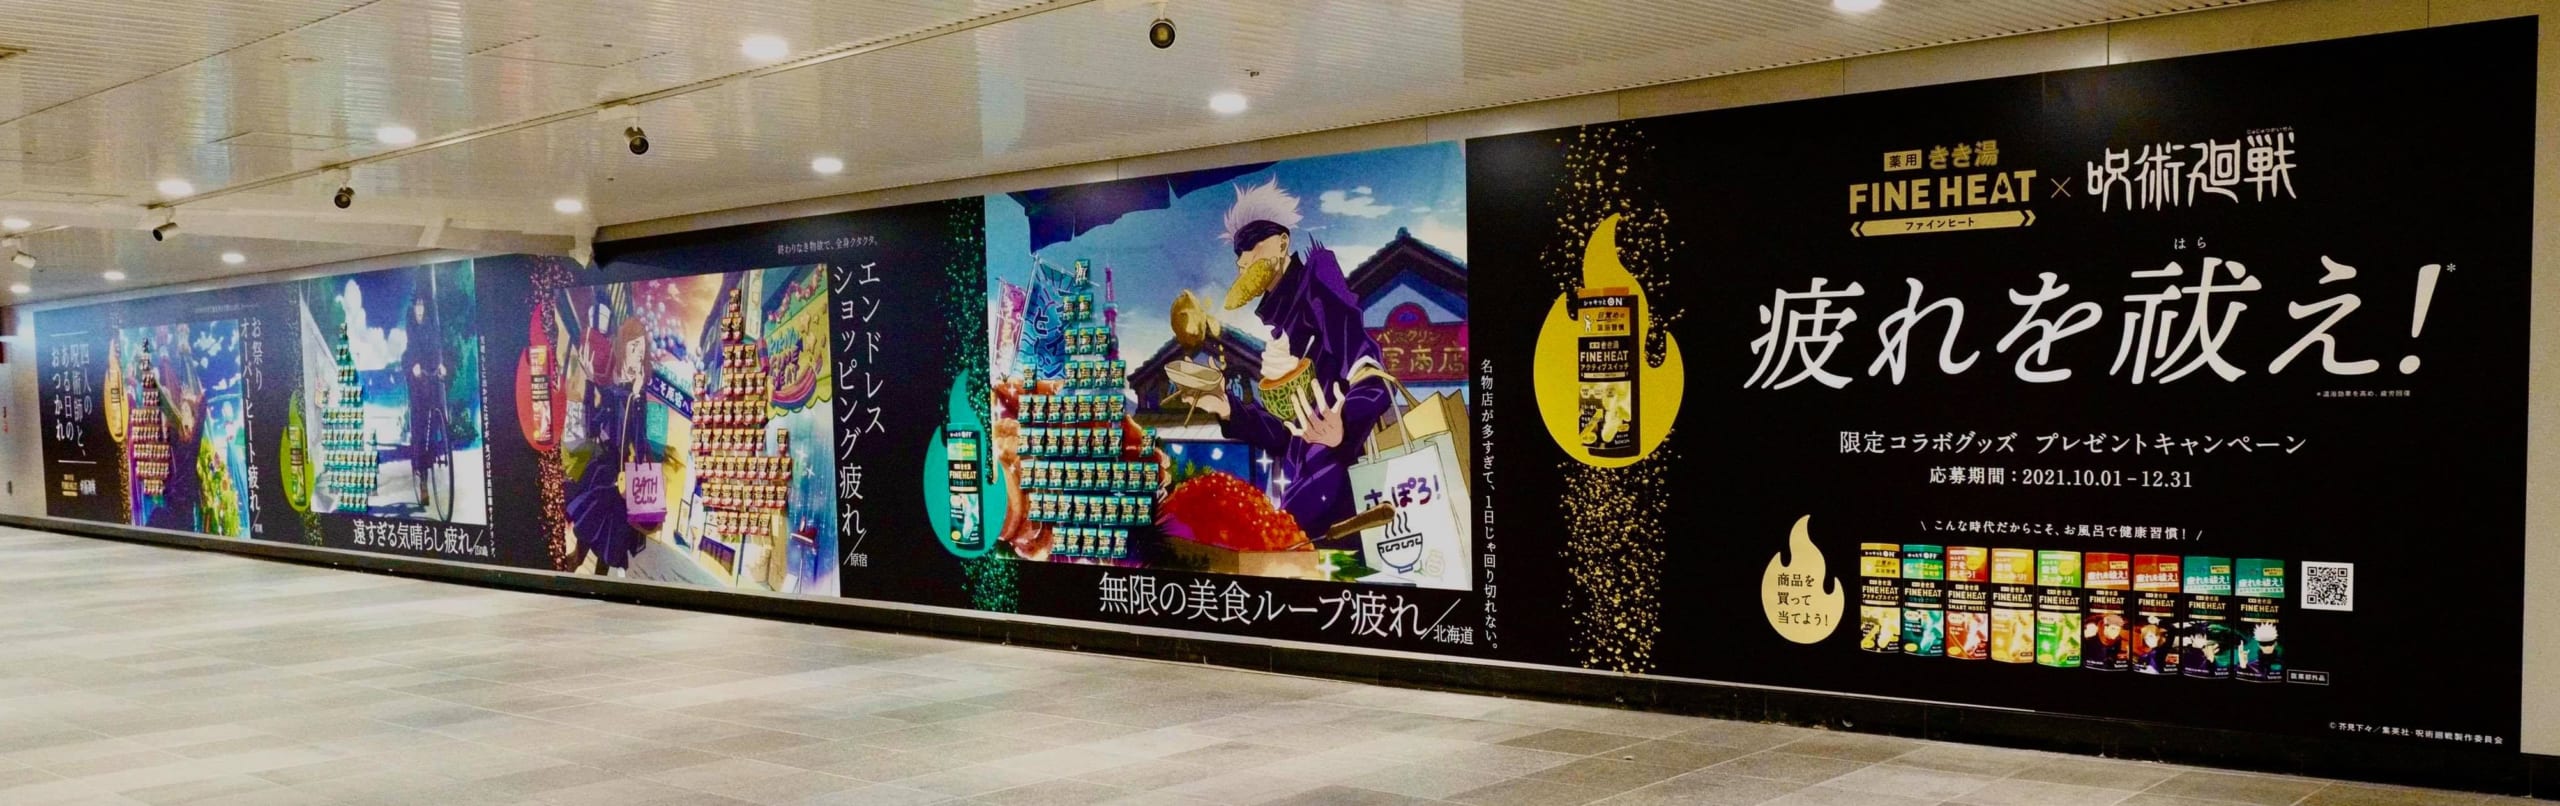 「呪術廻戦×きき湯」巨大コラボ広告「四人の呪術師と、ある日のおつかれ」現地写真